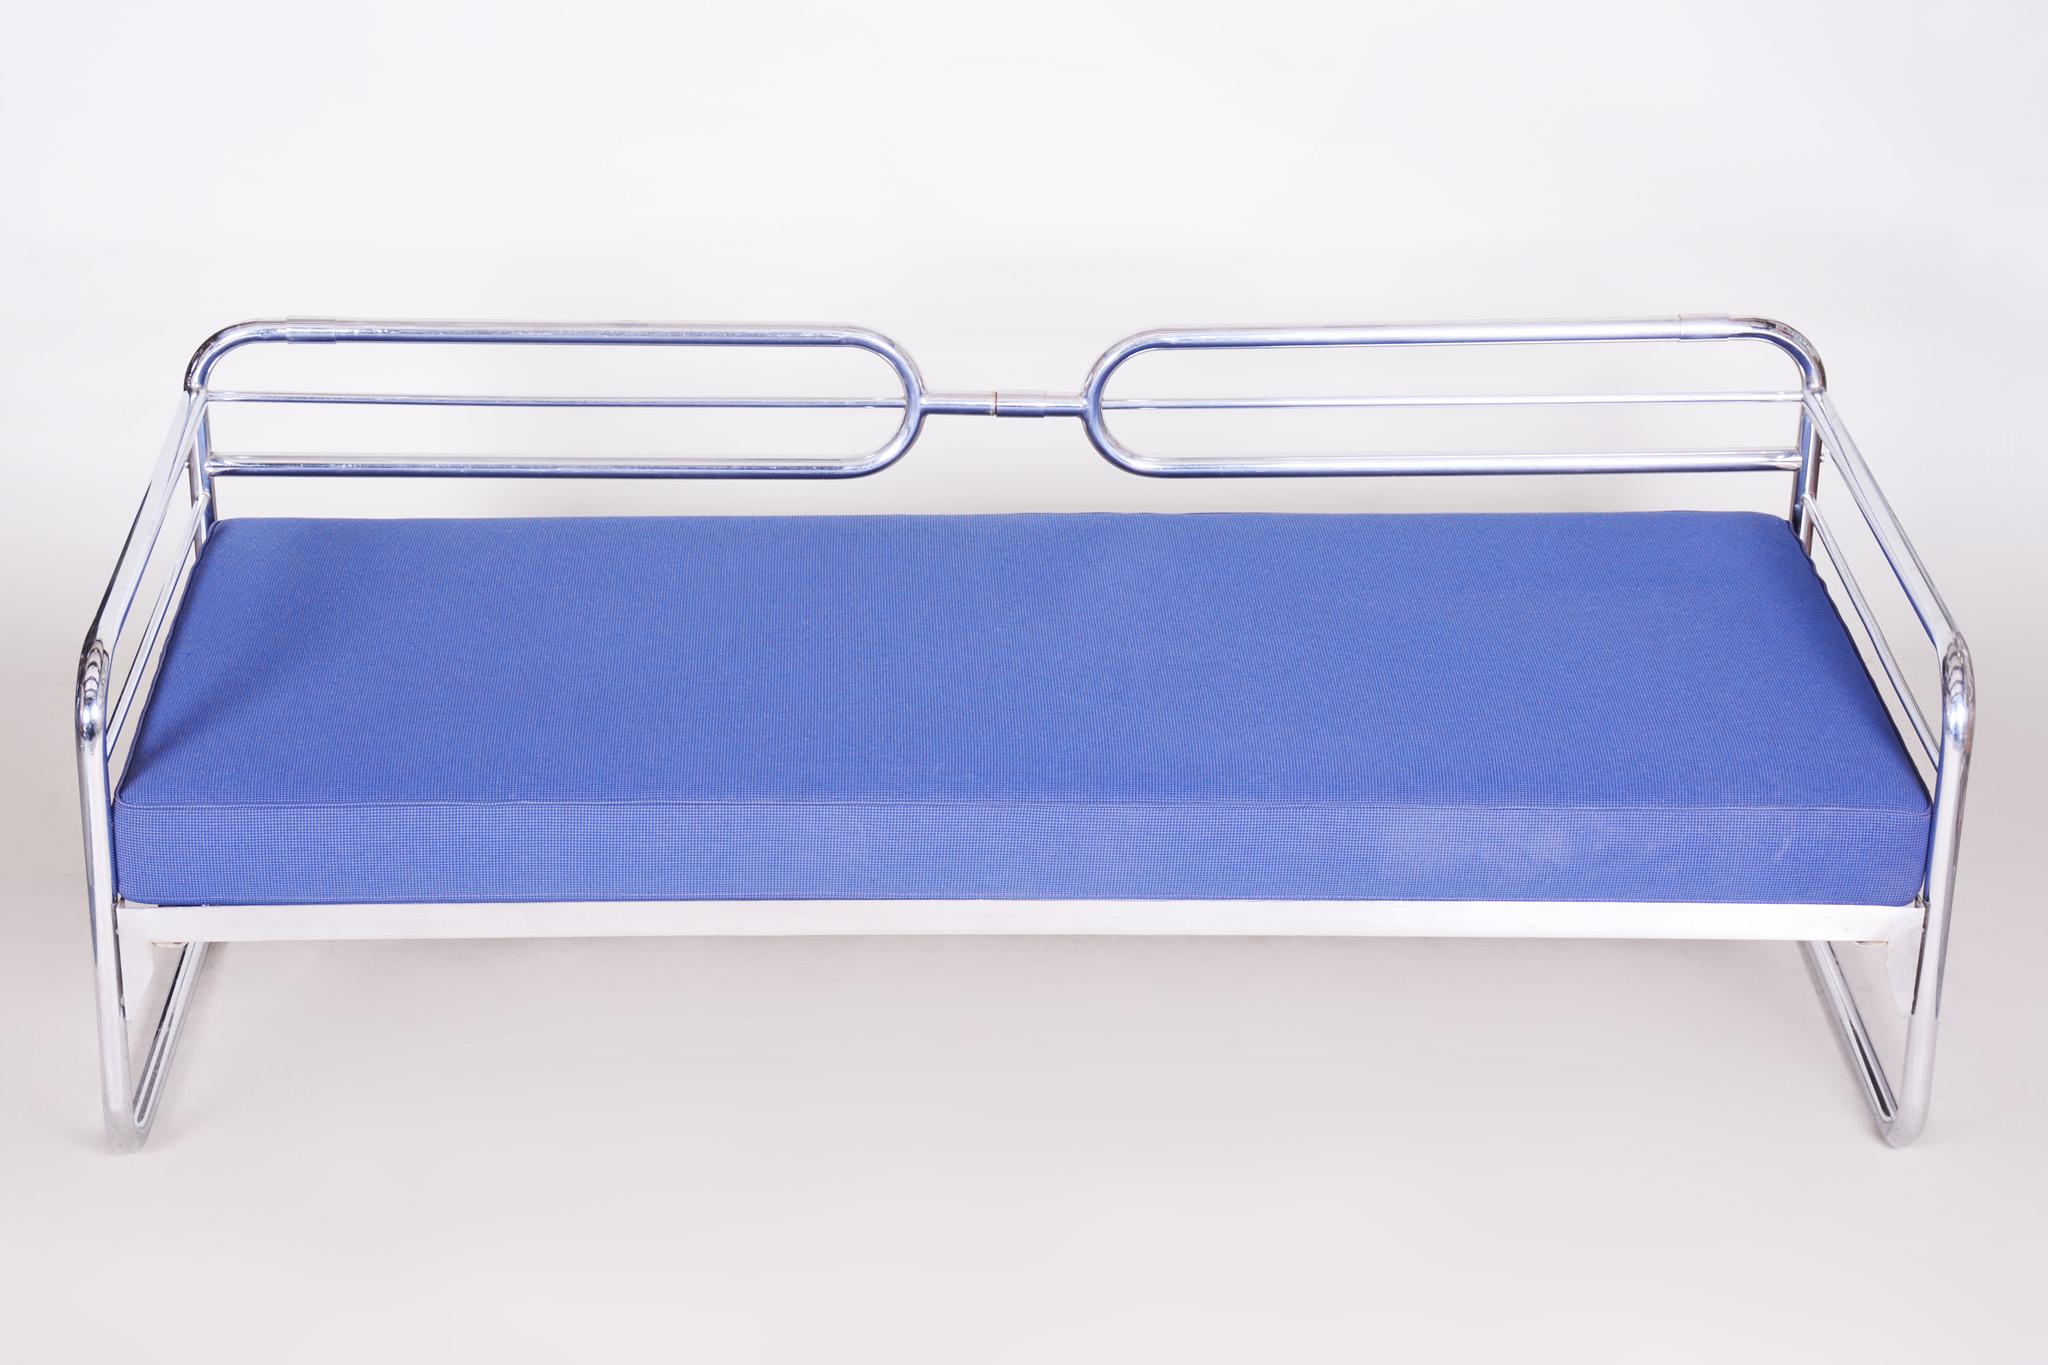 Czech Bauhaus Blue Tubular Chrome Sofa by Hynek Gottwald, New Upholstery, 1930s For Sale 3